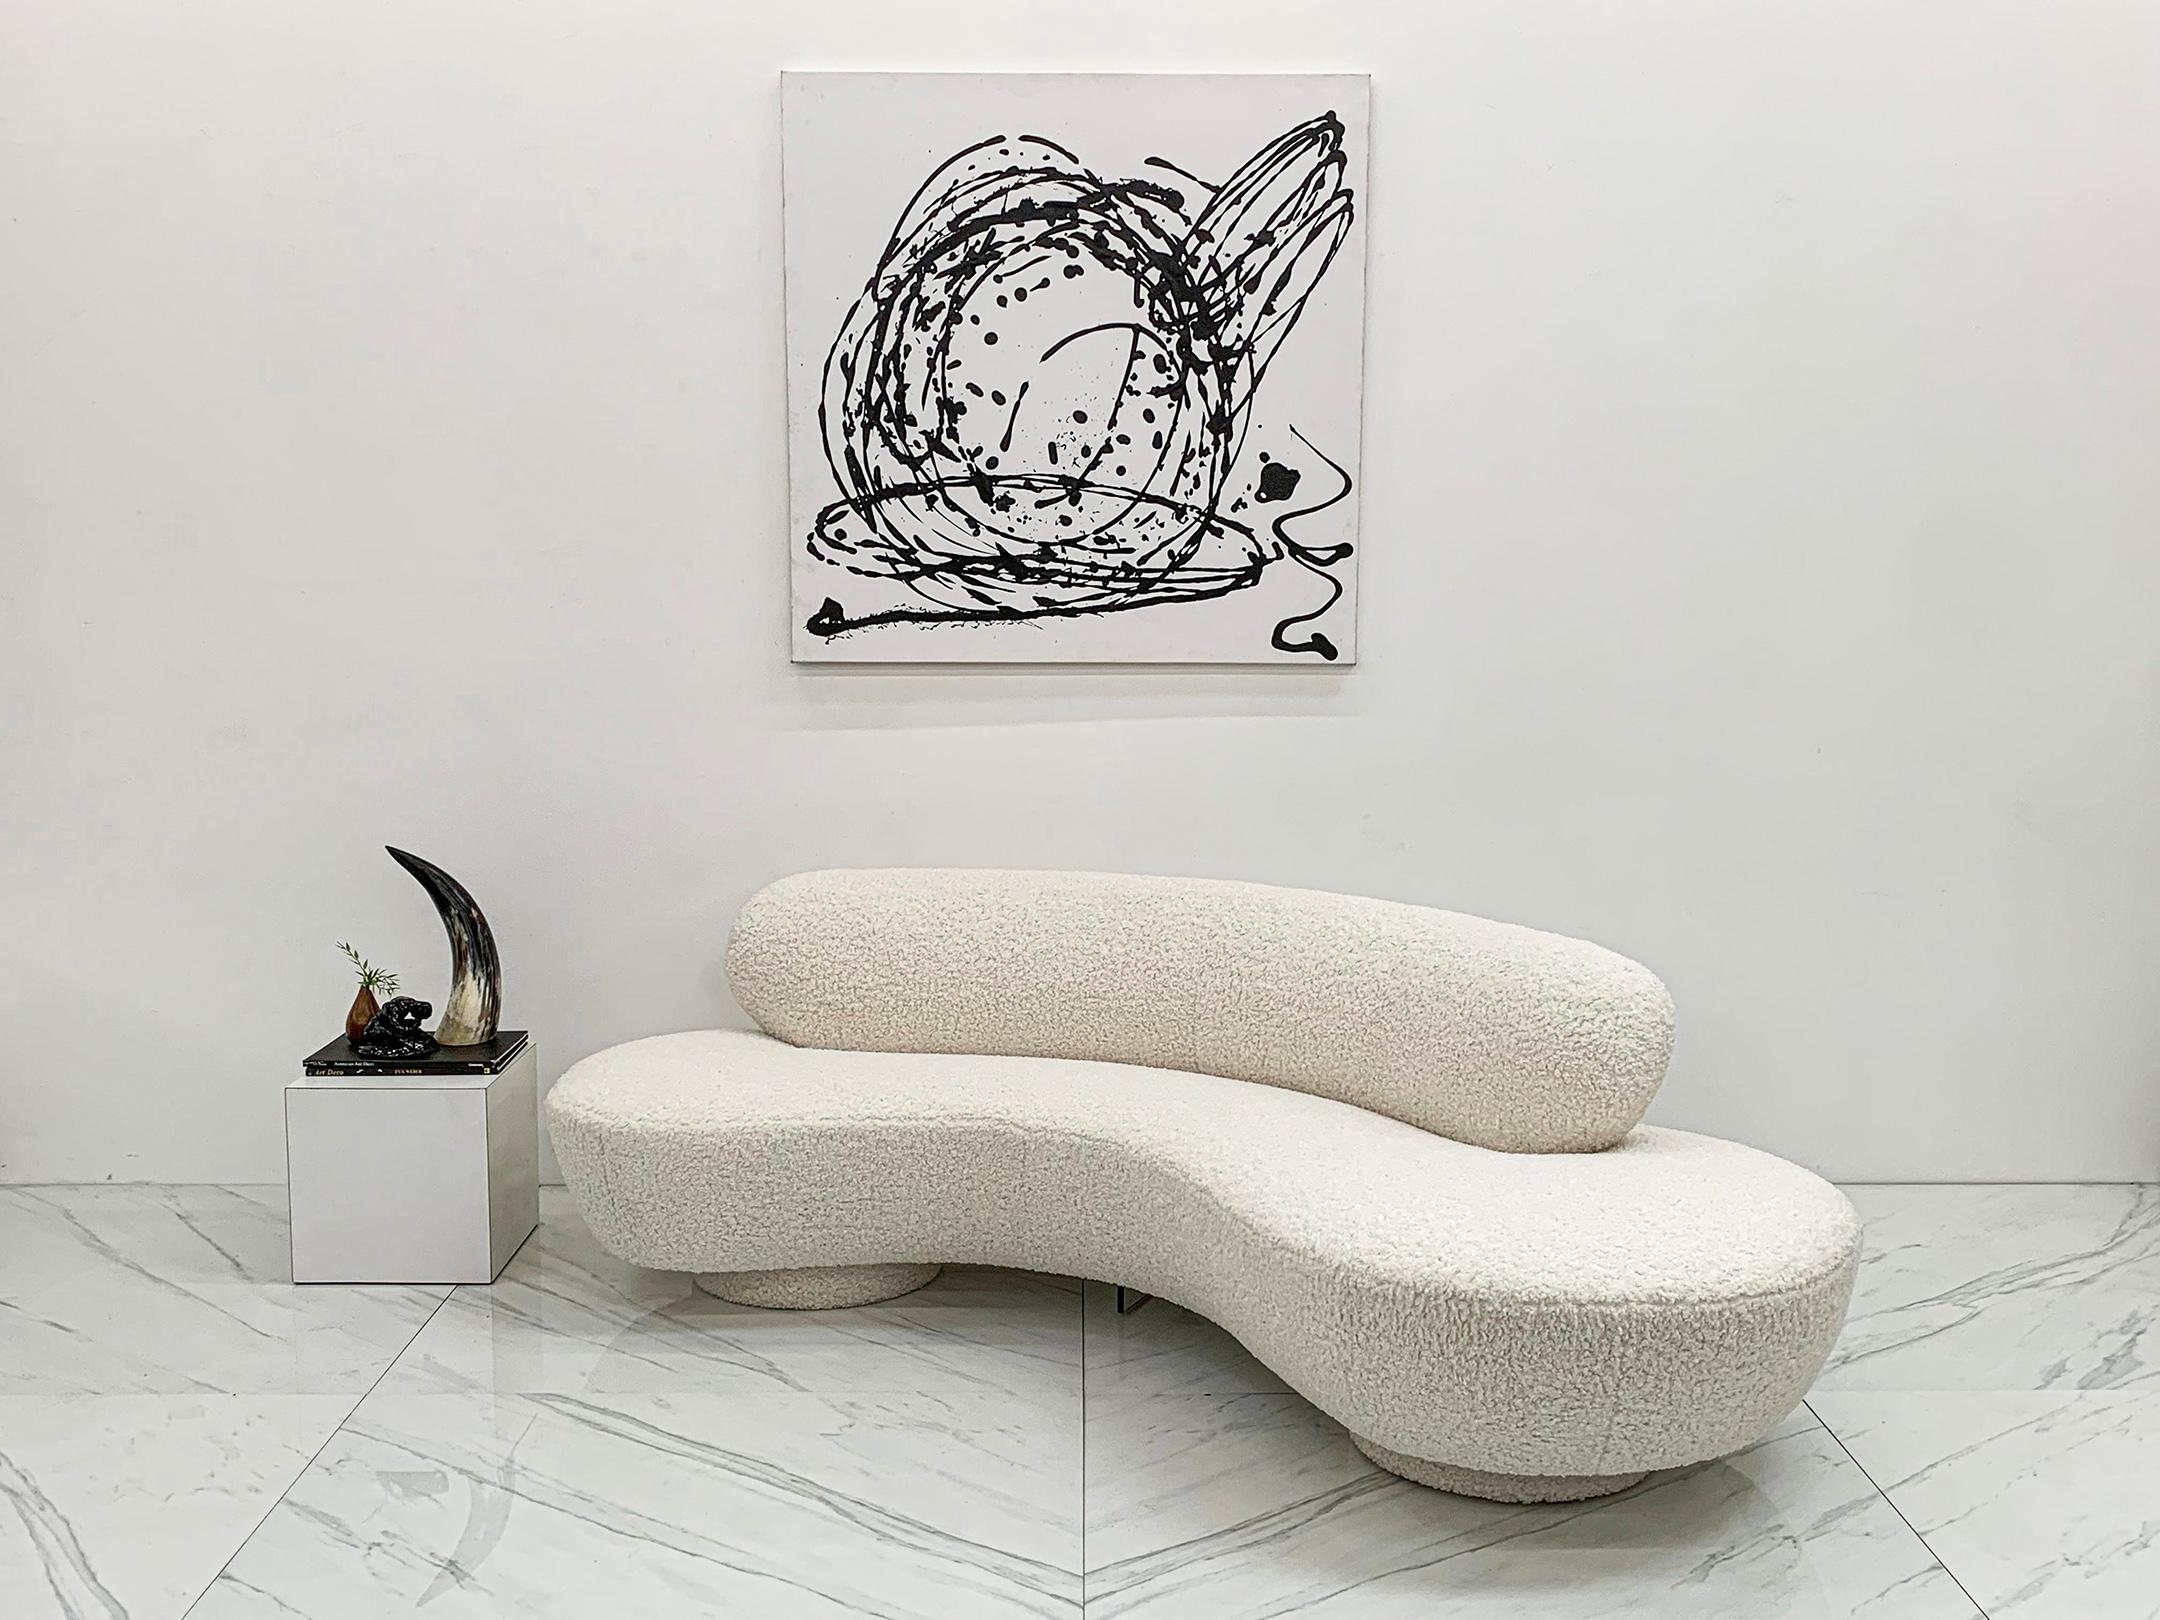 Ce canapé de Vladimir Kagan est tout simplement magnifique. L'ensemble du canapé a été recouvert d'un bouclé ivoire épais, y compris le fond à double disque. Ce canapé très texturé n'est pas seulement attrayant sur le plan visuel, il est aussi